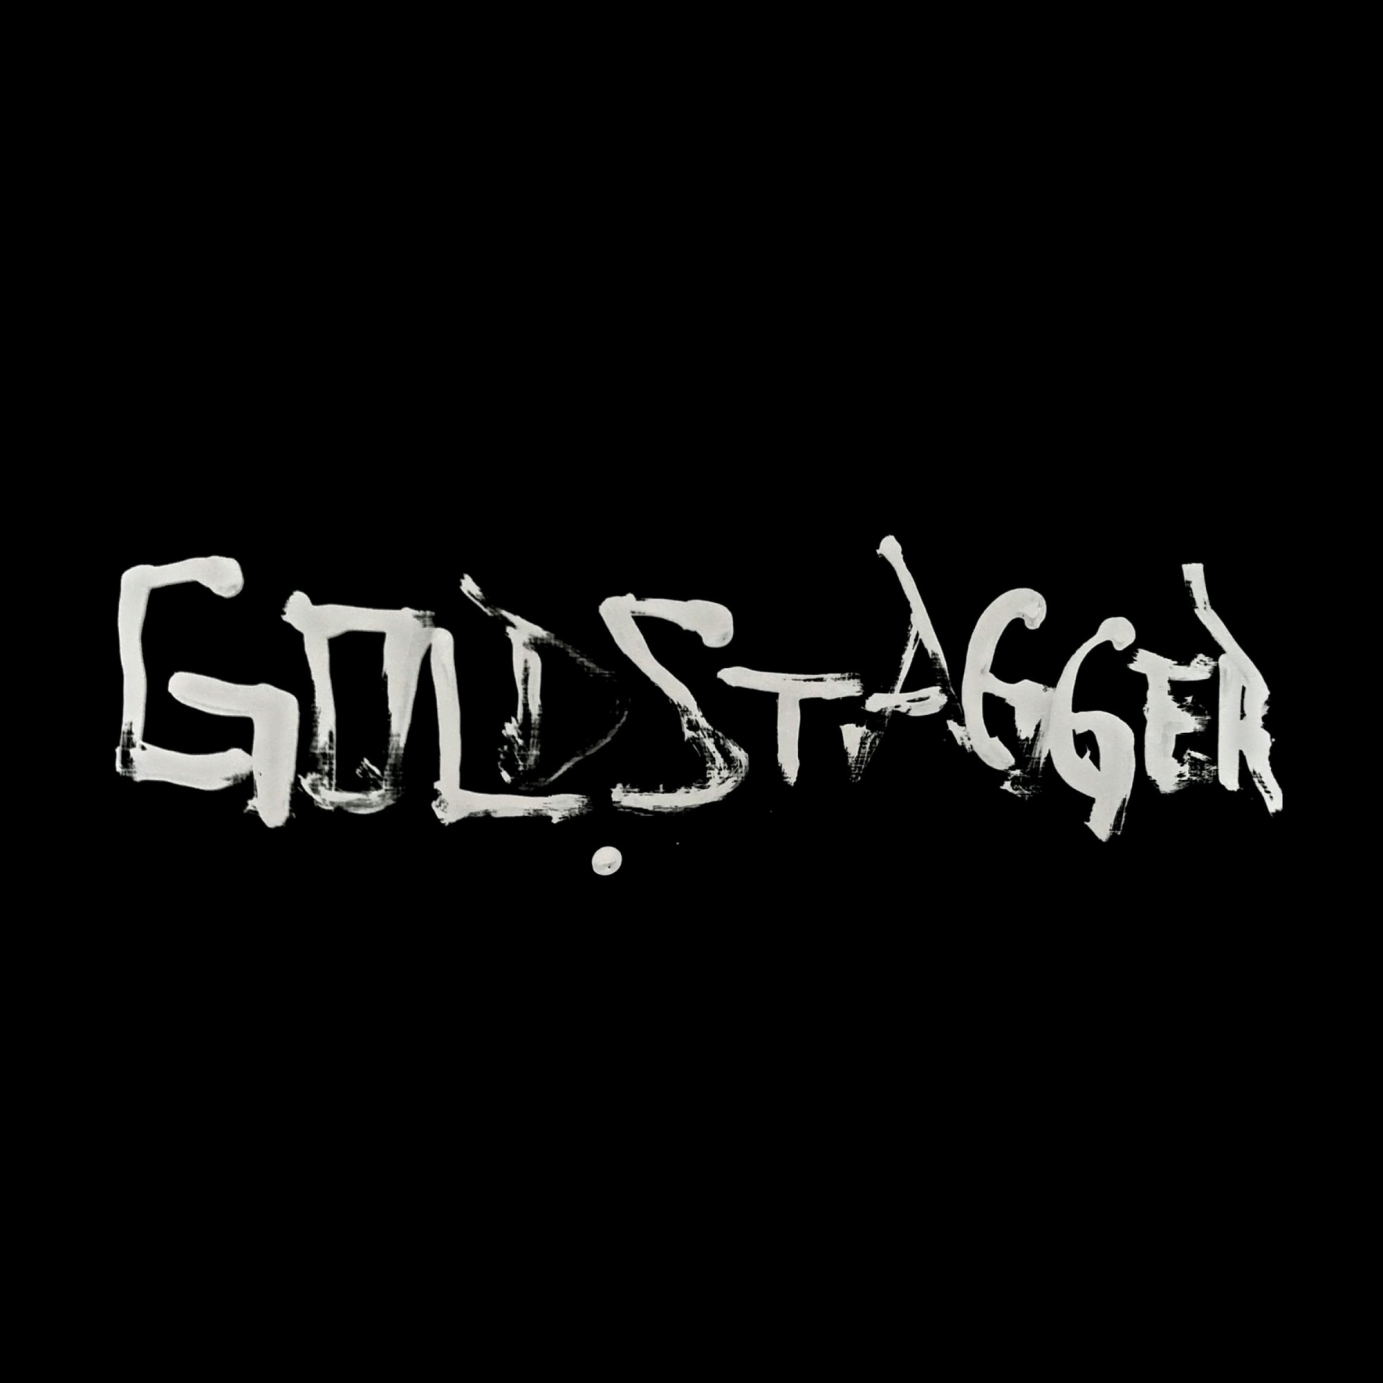 Goldstagger Album Design Options